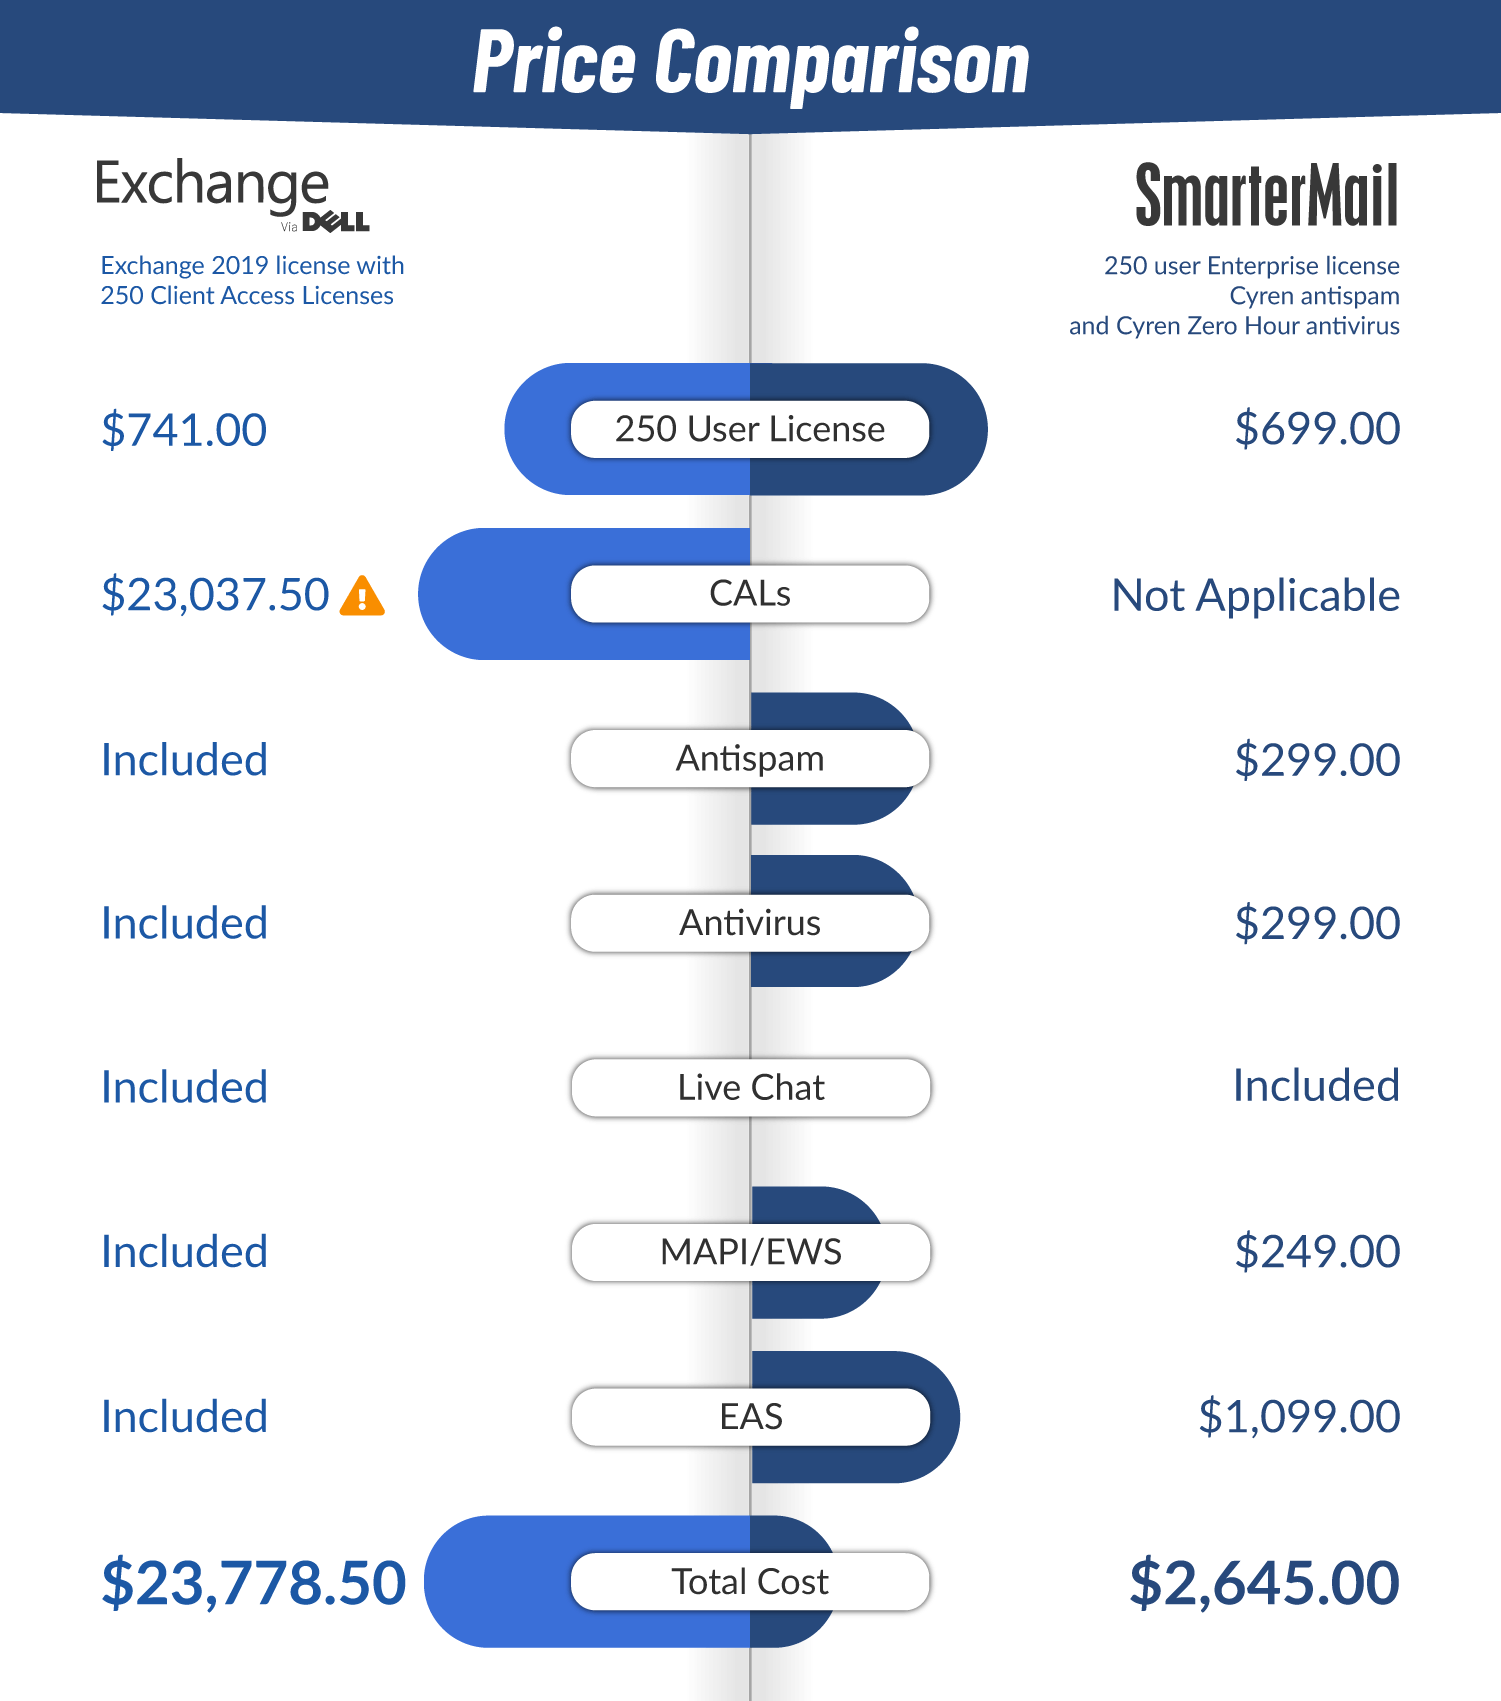 smartermail vs exchange